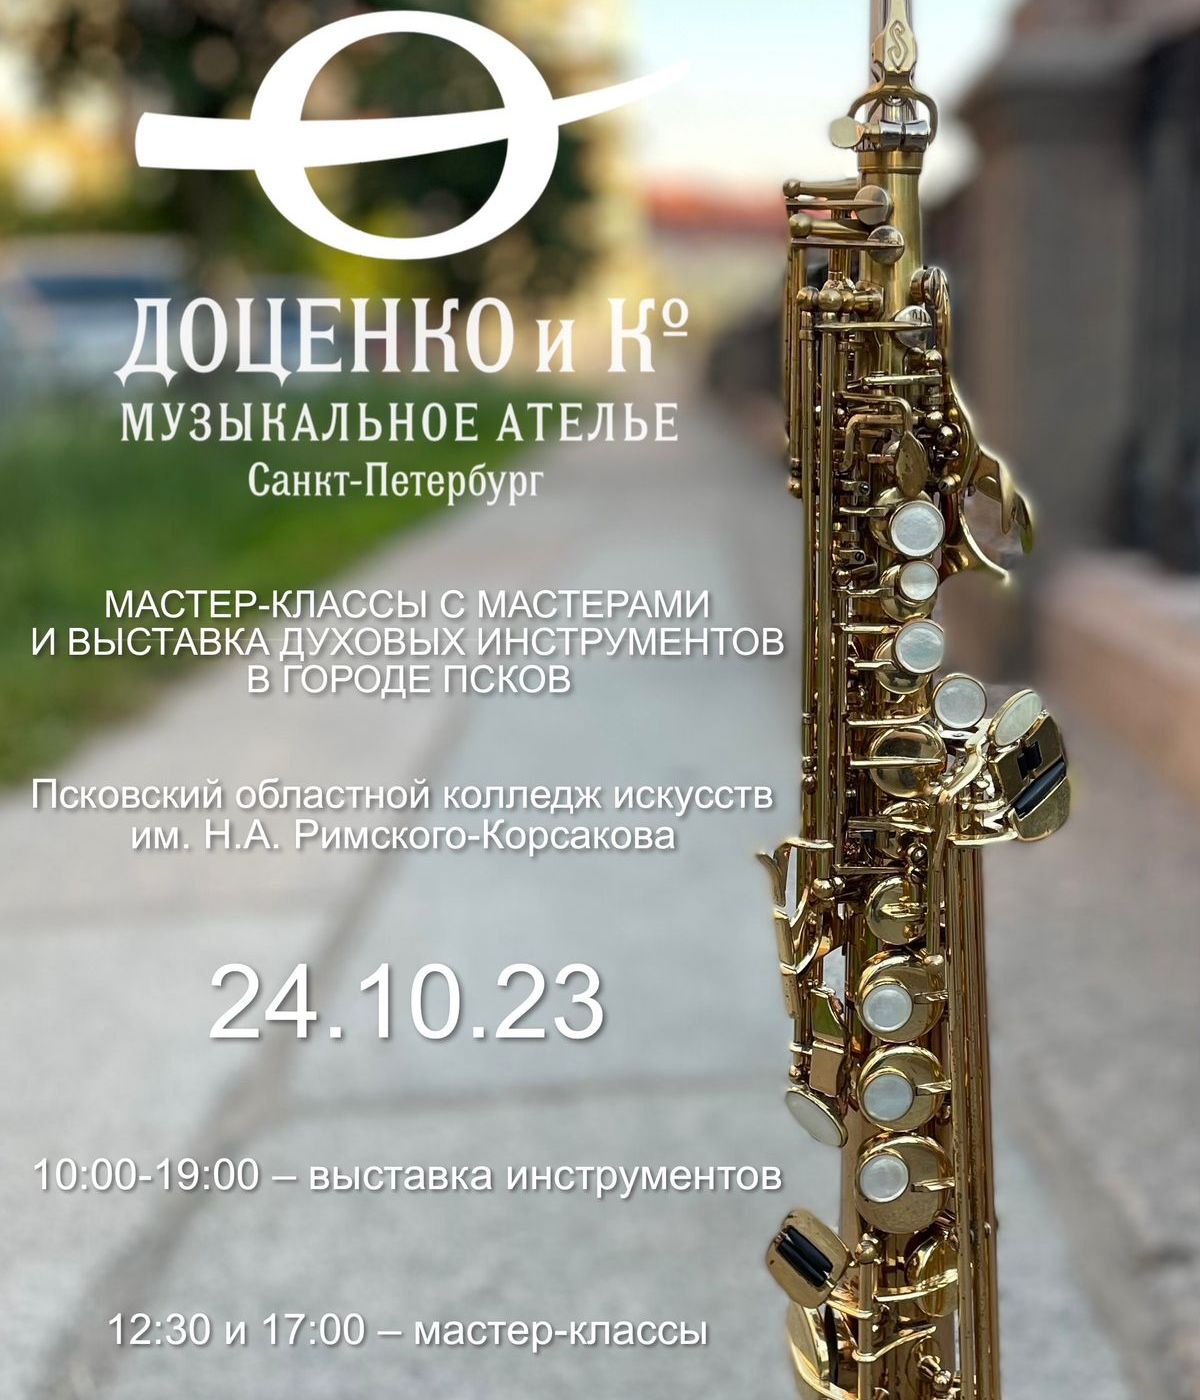 На выставку духовых инструментов марки Доценко и Ко (г. Санкт-Петербург) приглашают псковичей 24 октября